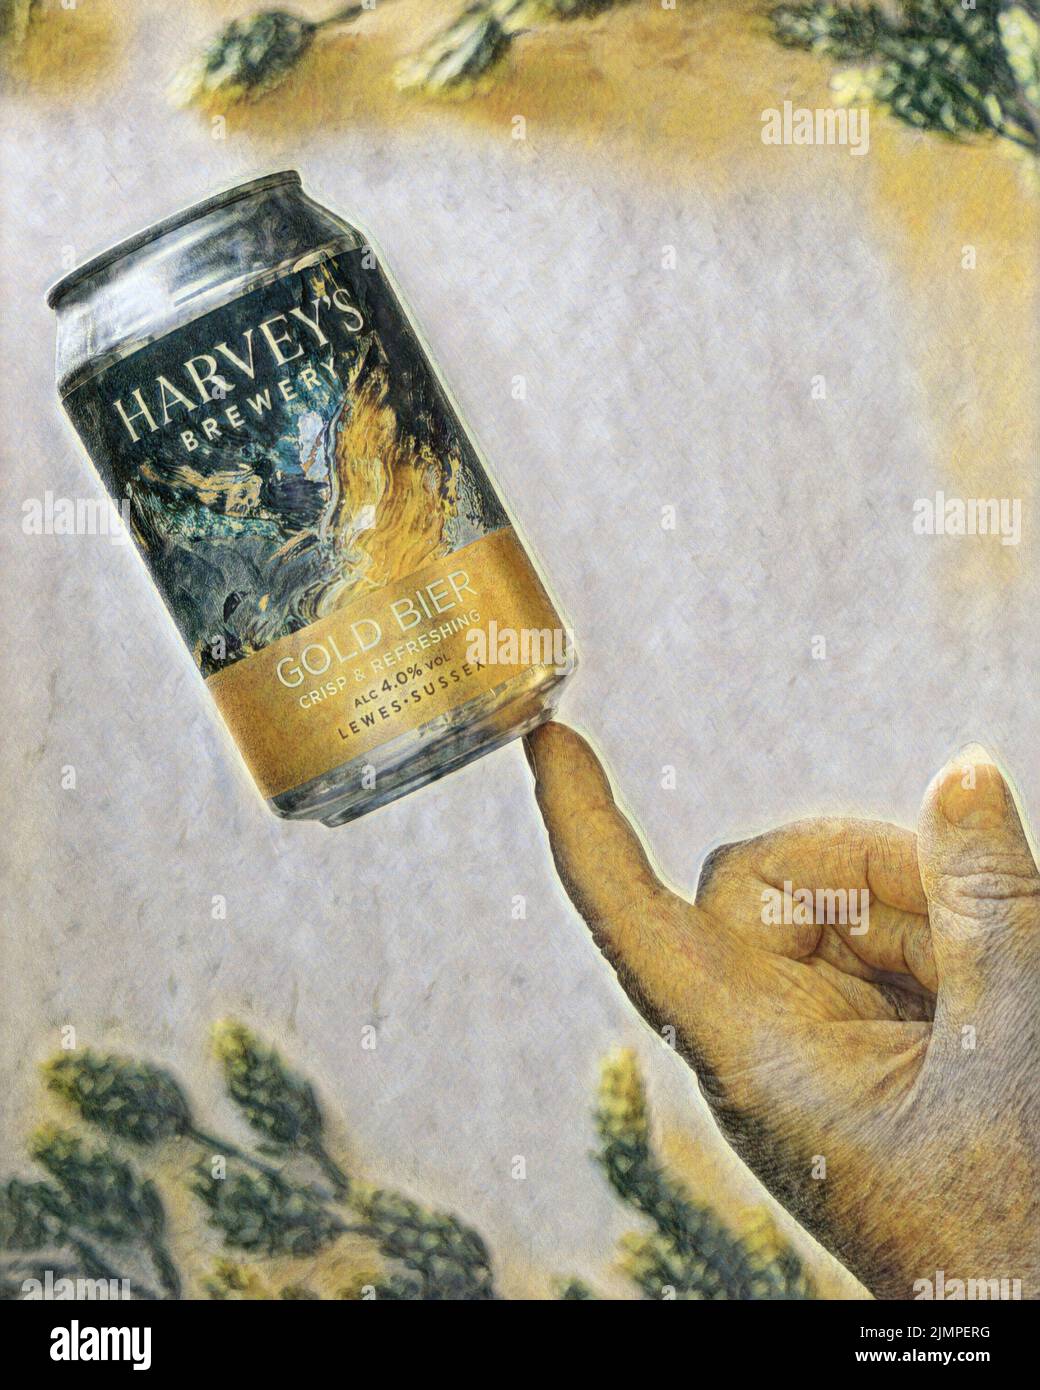 Une canette de la bière de Harvey se équilibrant sur un seul doigt. Une photographie retouchée dans un style de peinture. Banque D'Images